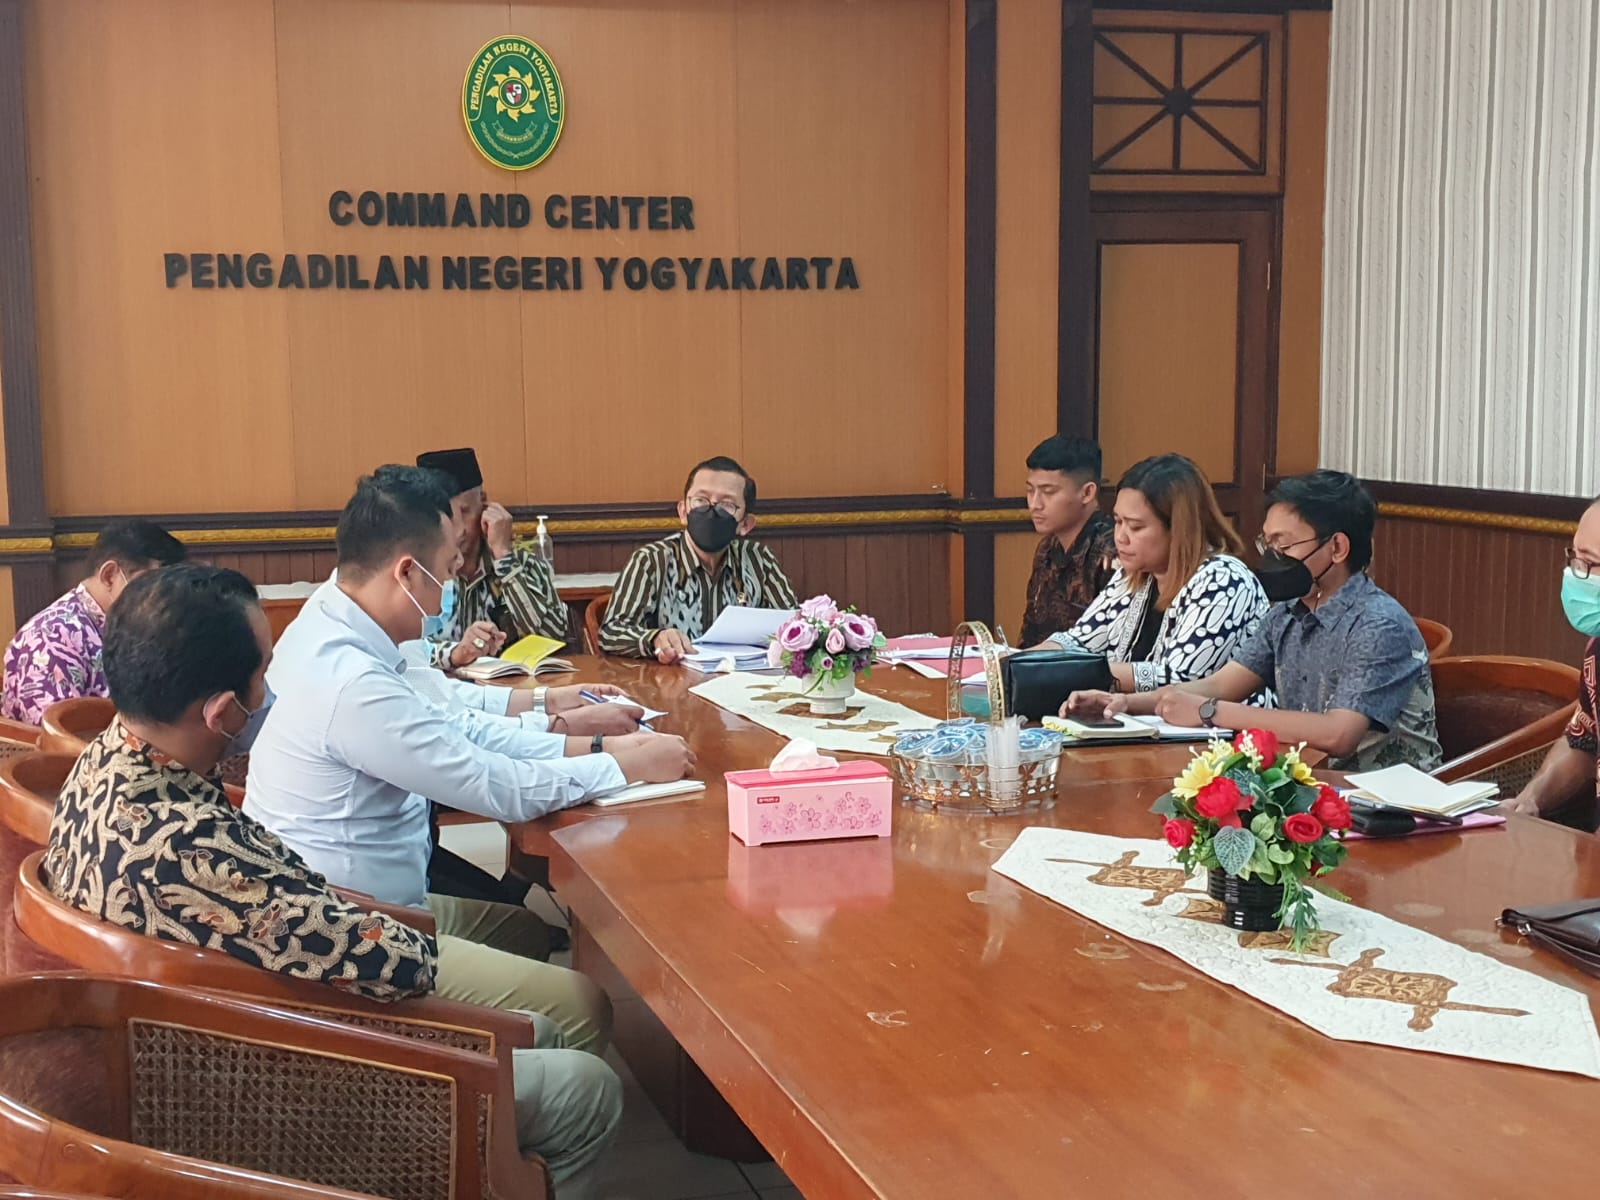 Pengadilan Negeri Yogyakarta Melakukan Kegiatan Teguran/Aanmaning